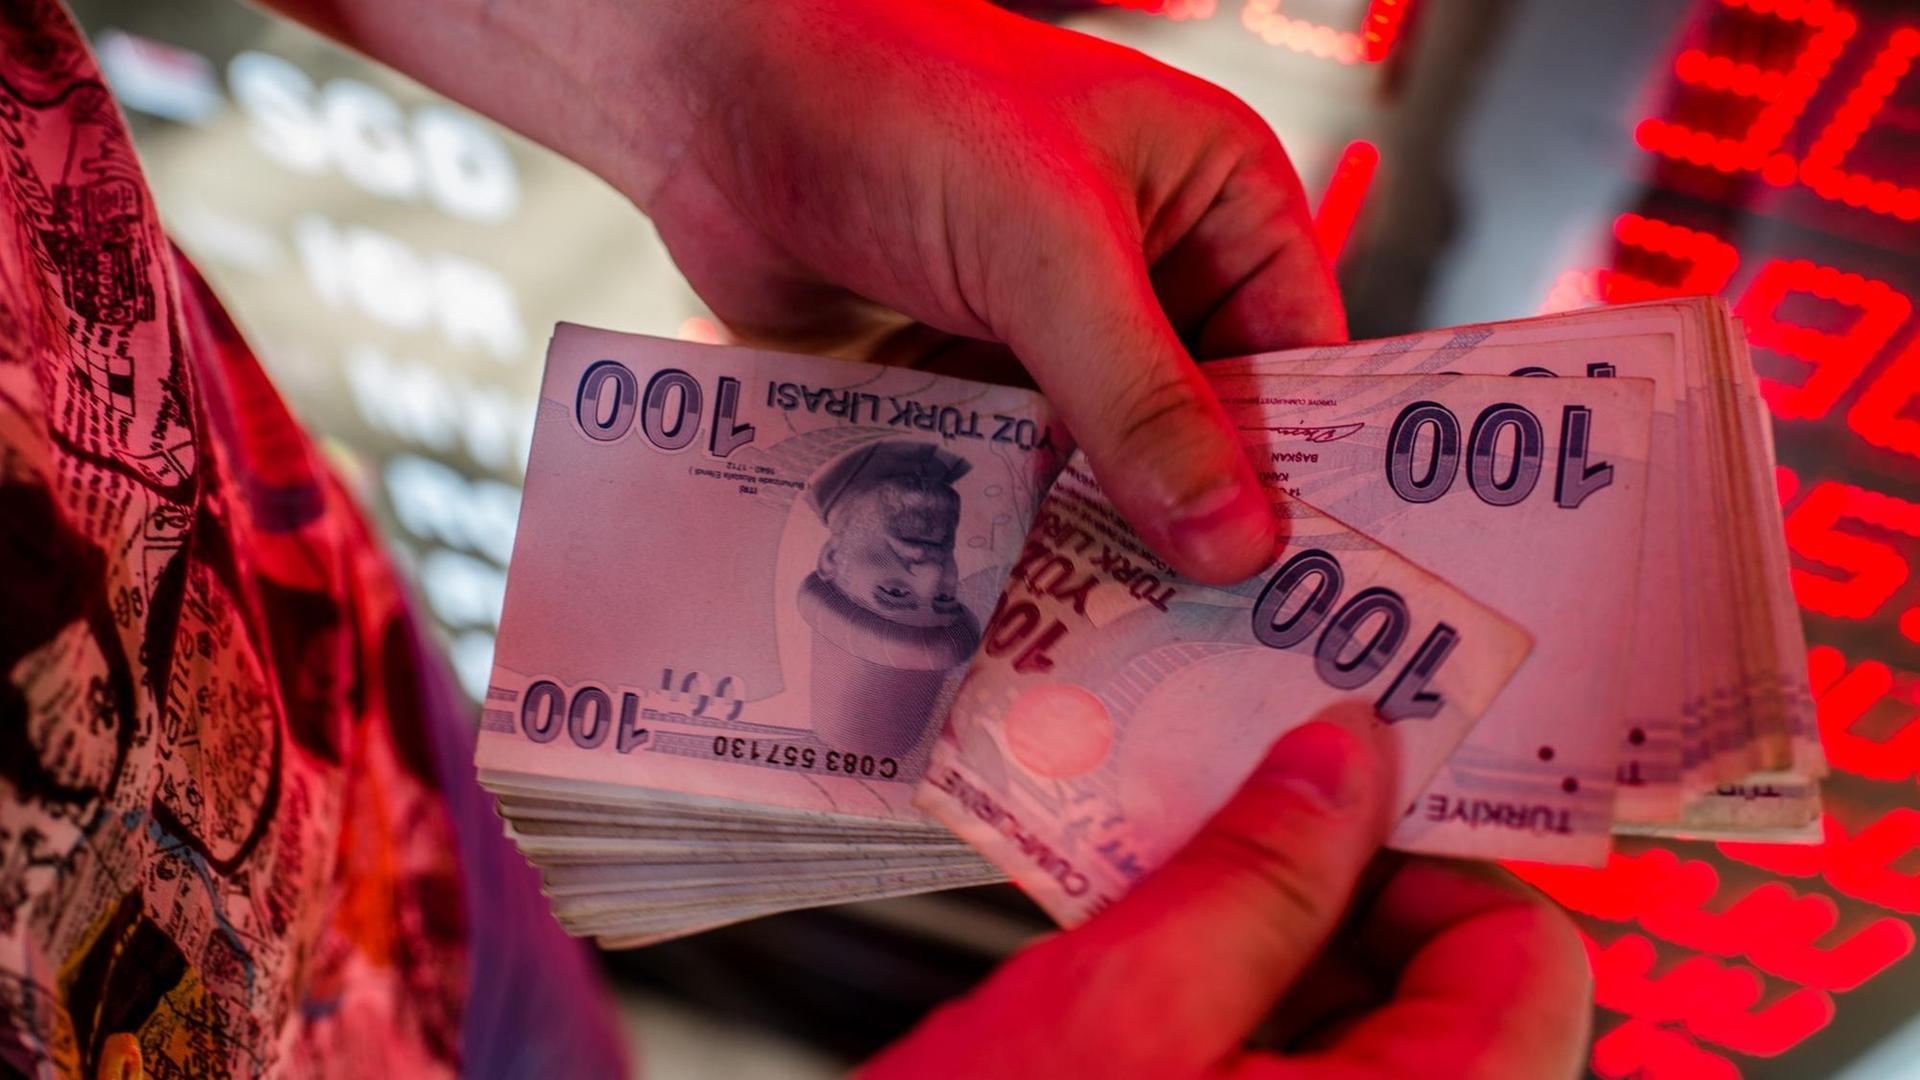 Das Bild zeigt Hände mit Banknoten der türkischen Landeswährung Lira an einem Geldautomaten. Im Hintergrund sind rot-leuchtende Wechselkurse zu sehen.